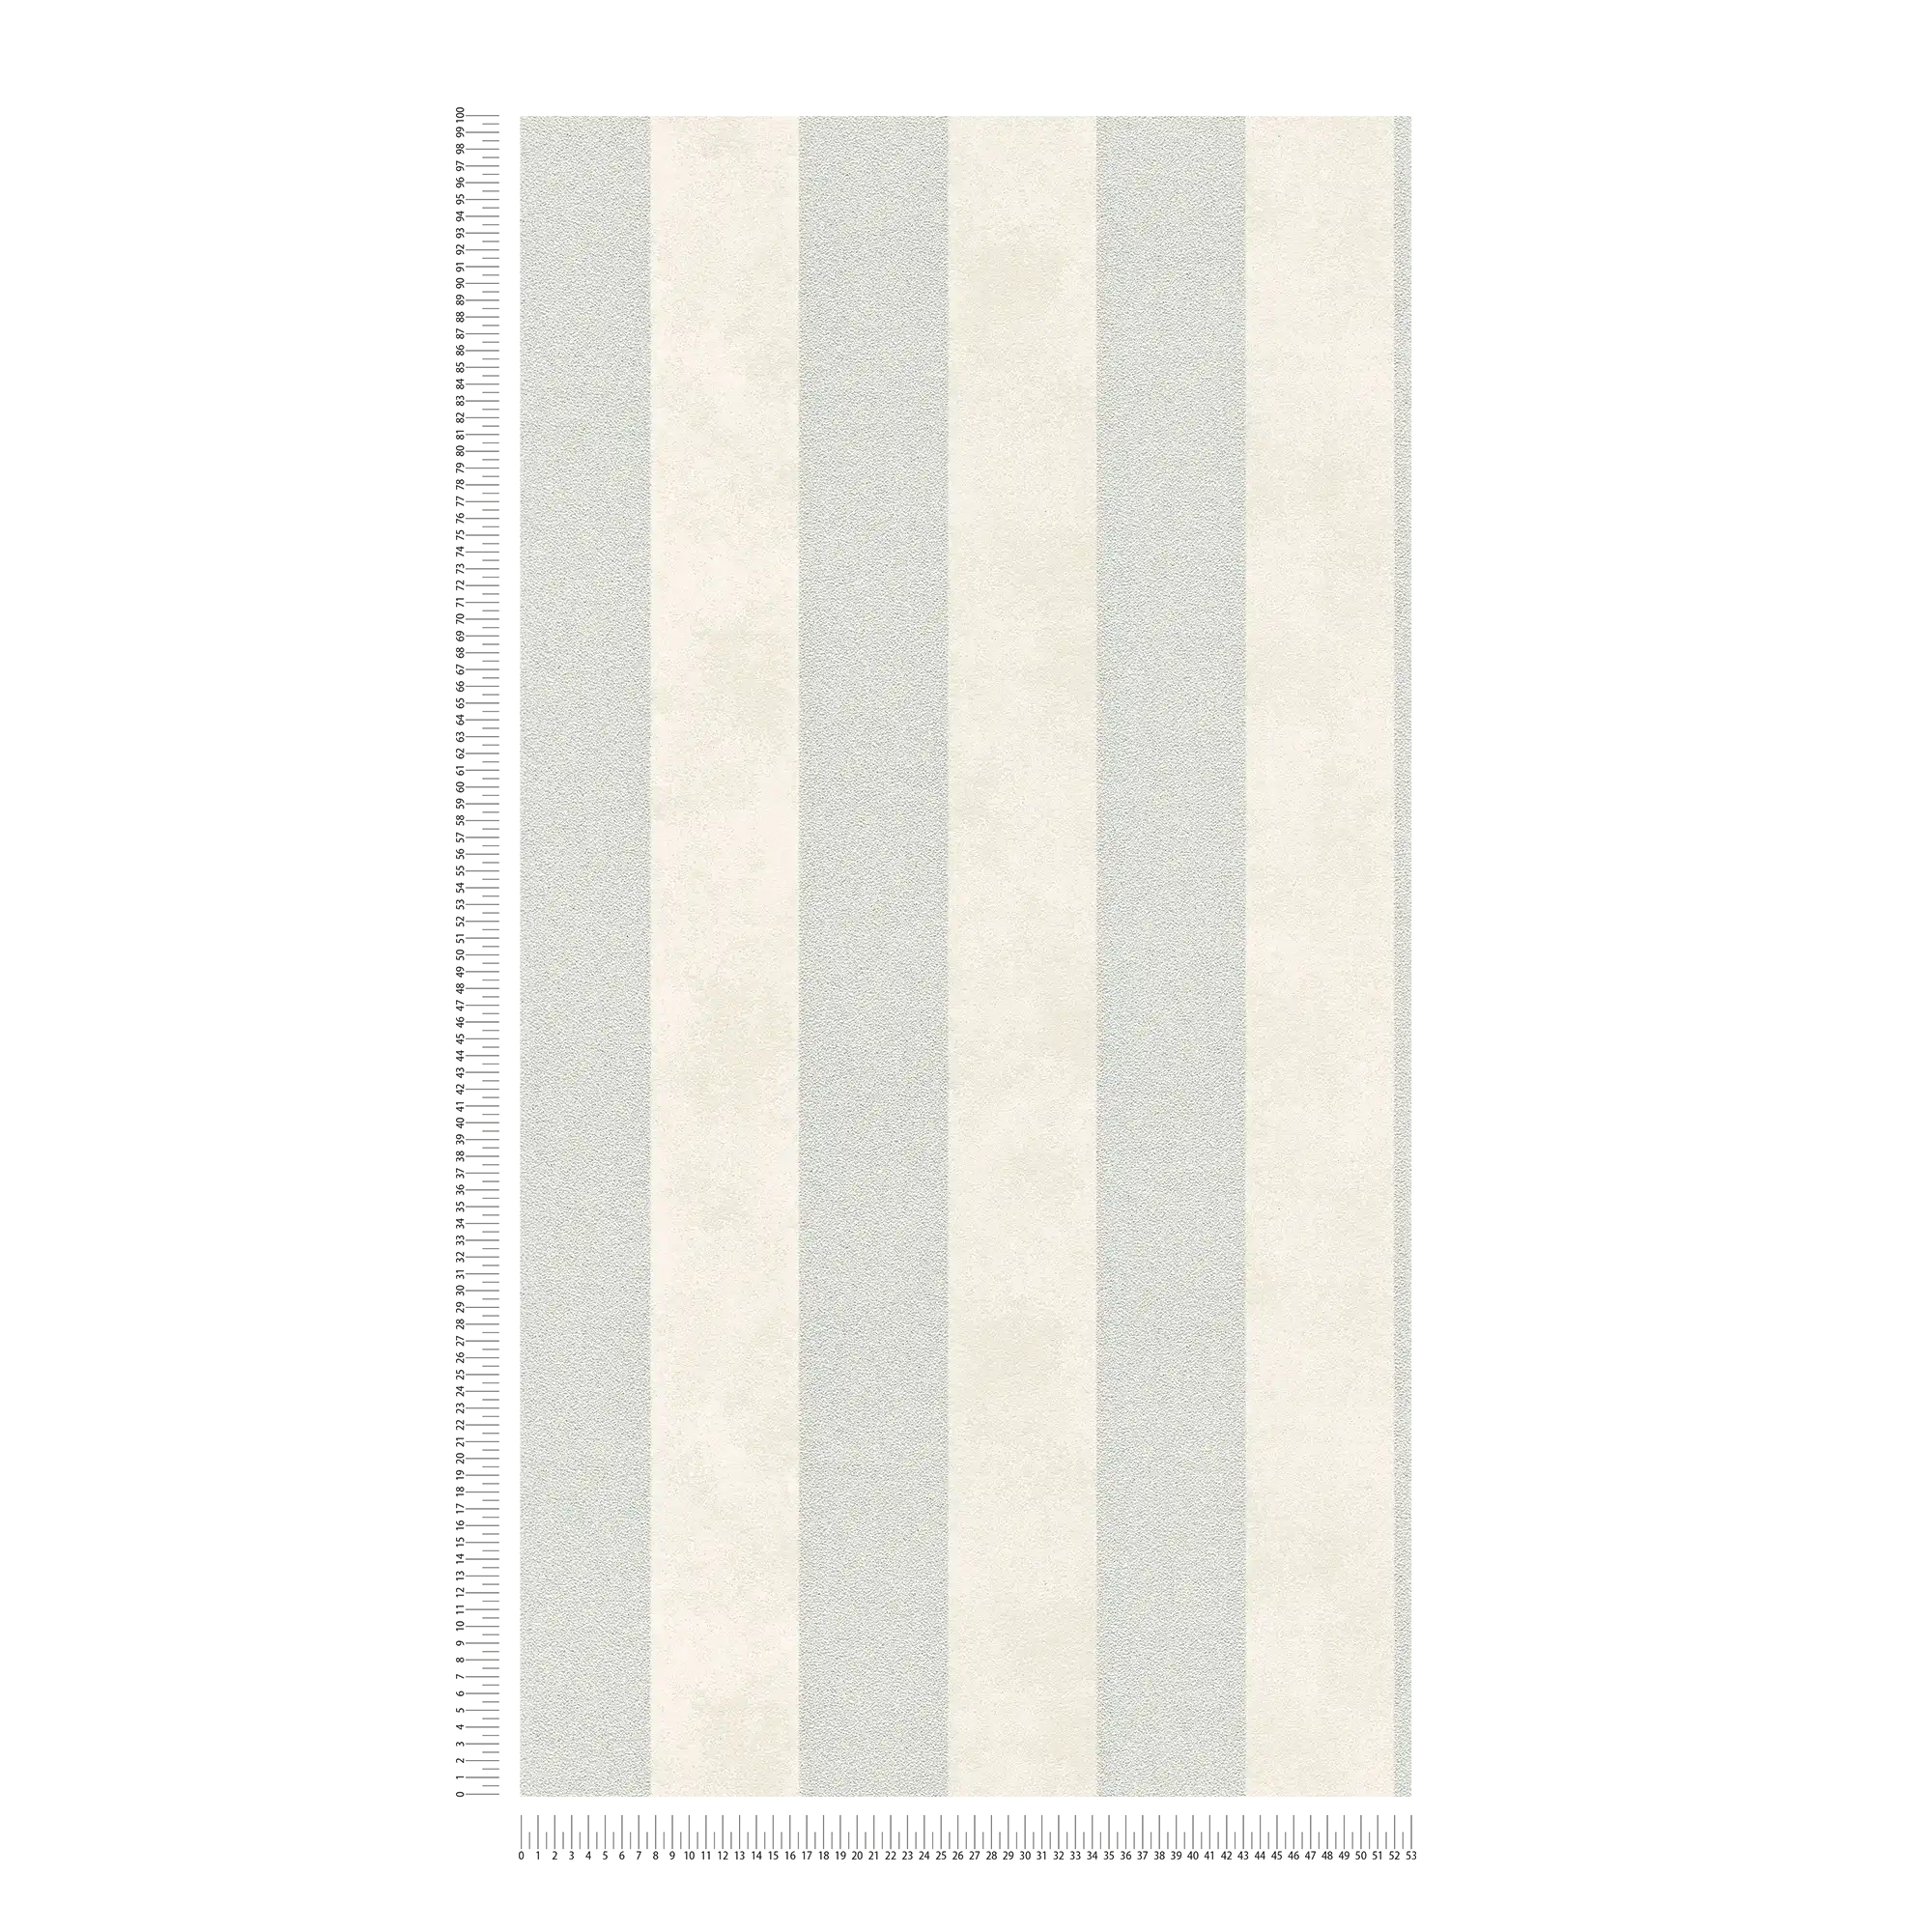             Papel pintado de rayas de color y estructura - plata, gris, blanco
        